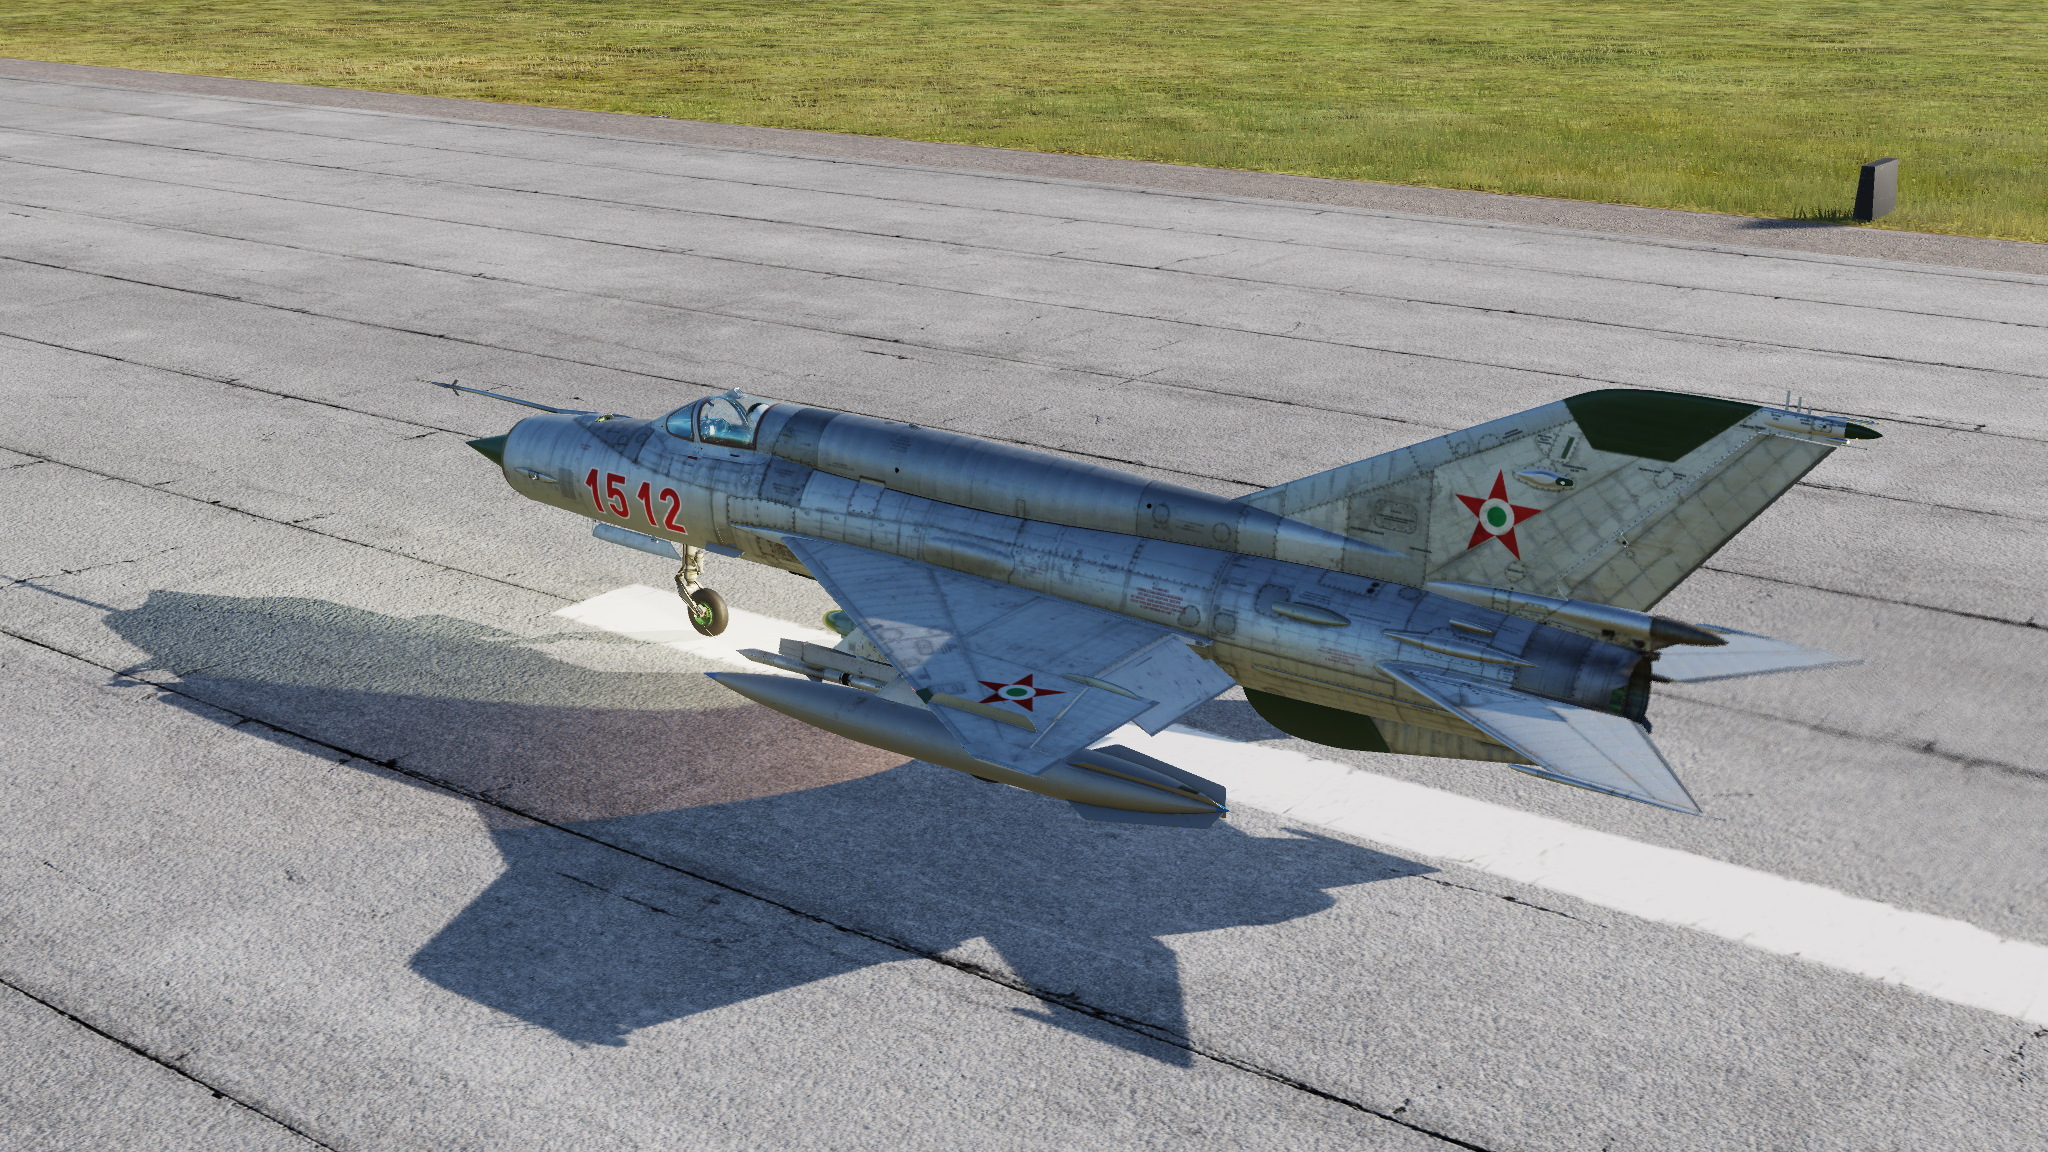 Hungarian MiG-21 metal skin